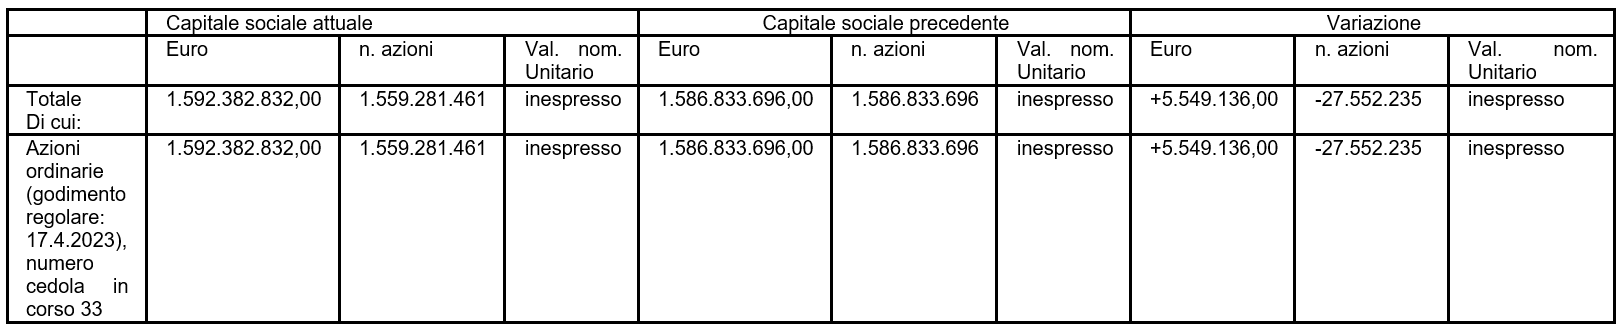 Variazione del Capitale Sociale